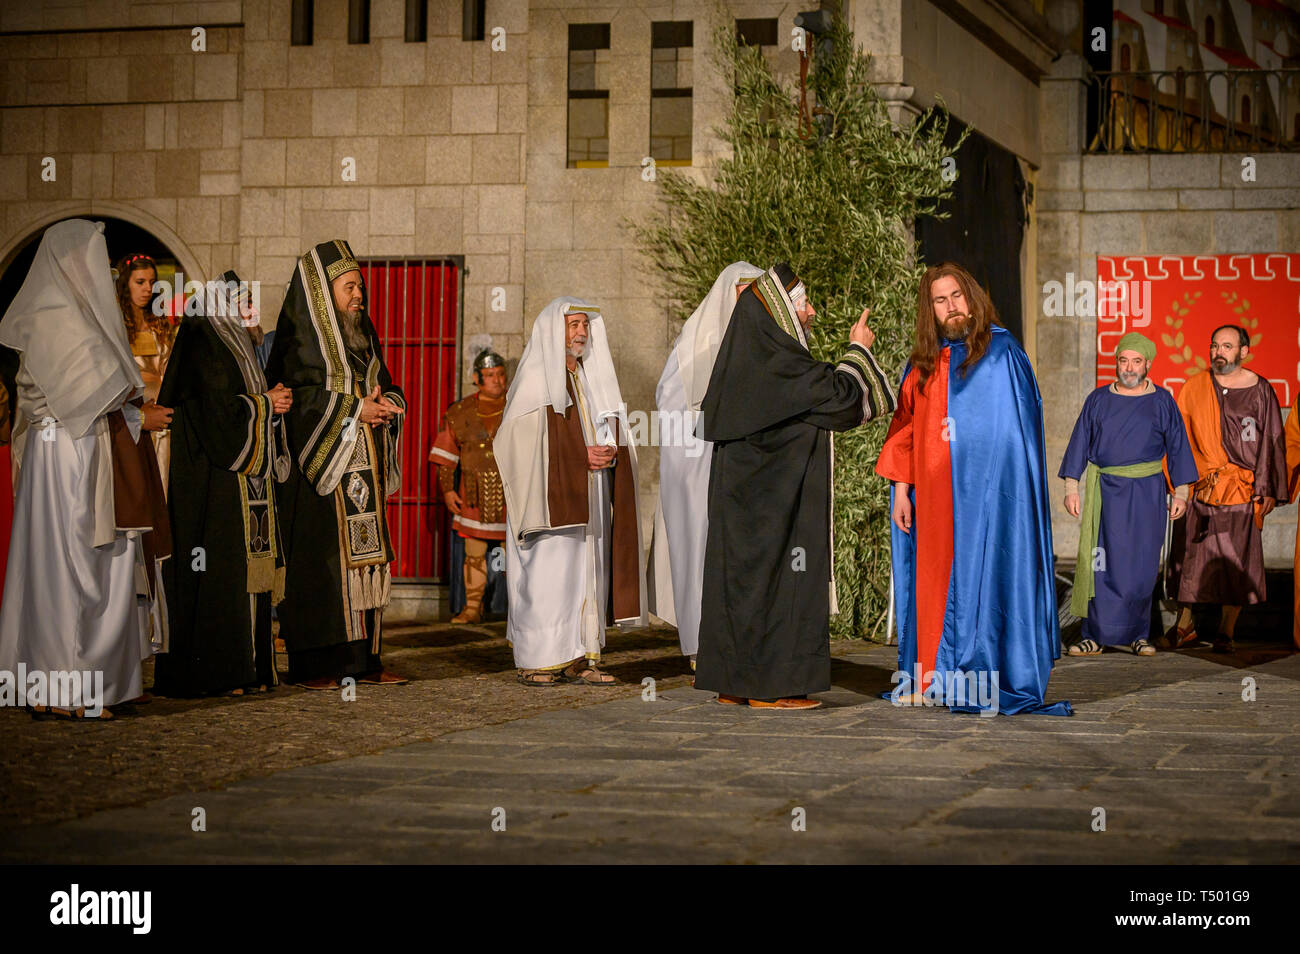 Brunete, Spanien - 11 April, 2019: beliebte Spiel der Passion Christi in der Plaza Mayor der Stadt. Jesus wirft die Juden für die Umwandlung von Stockfoto